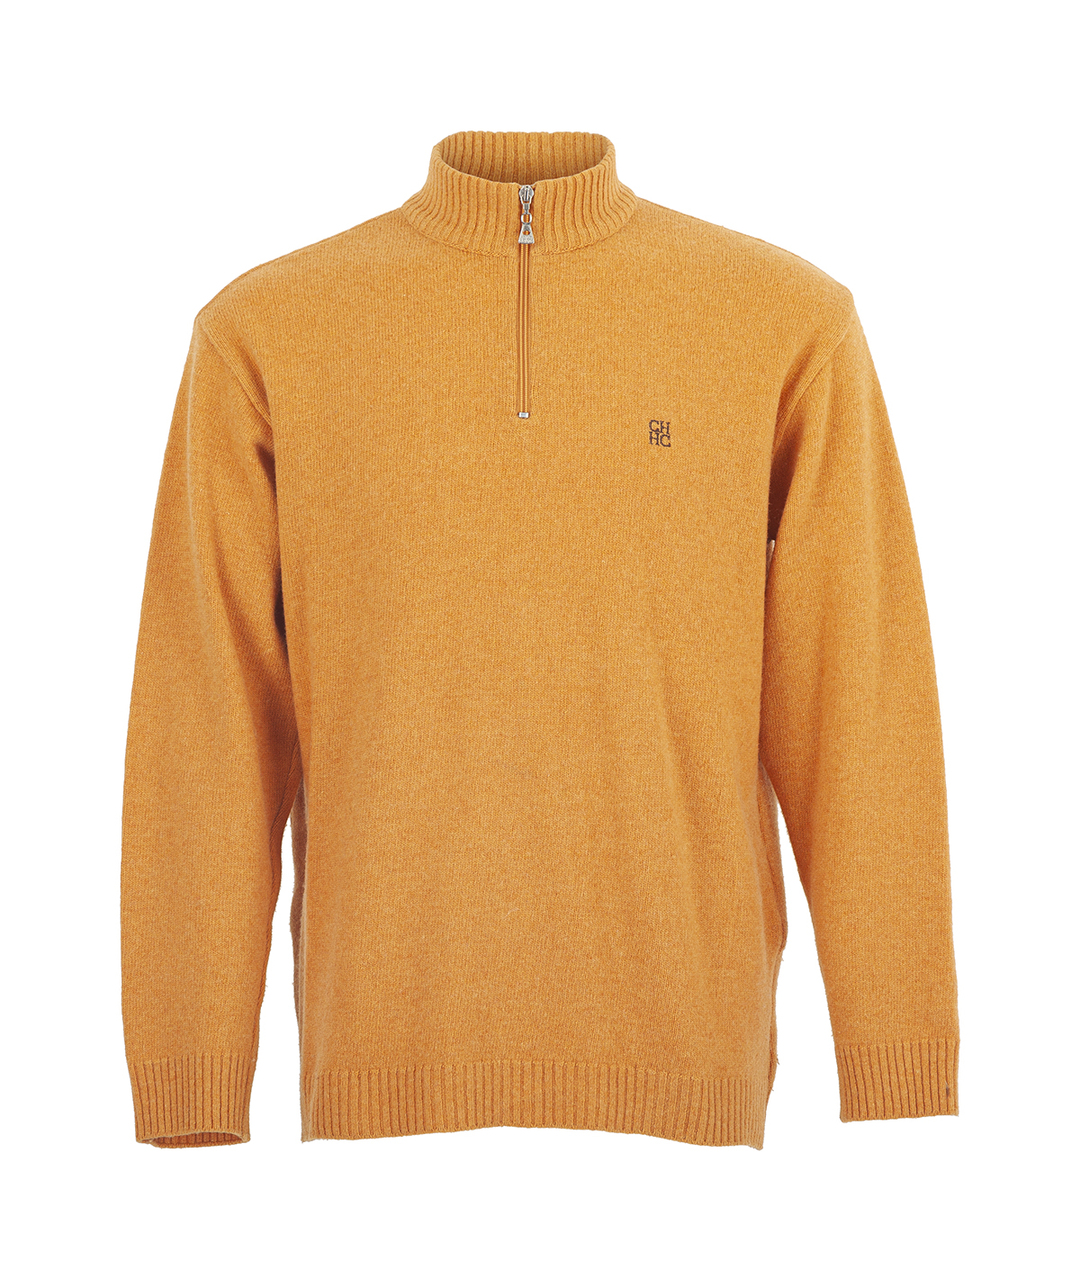 CAROLINA HERRERA Оранжевый шерстяной джемпер / свитер, фото 1